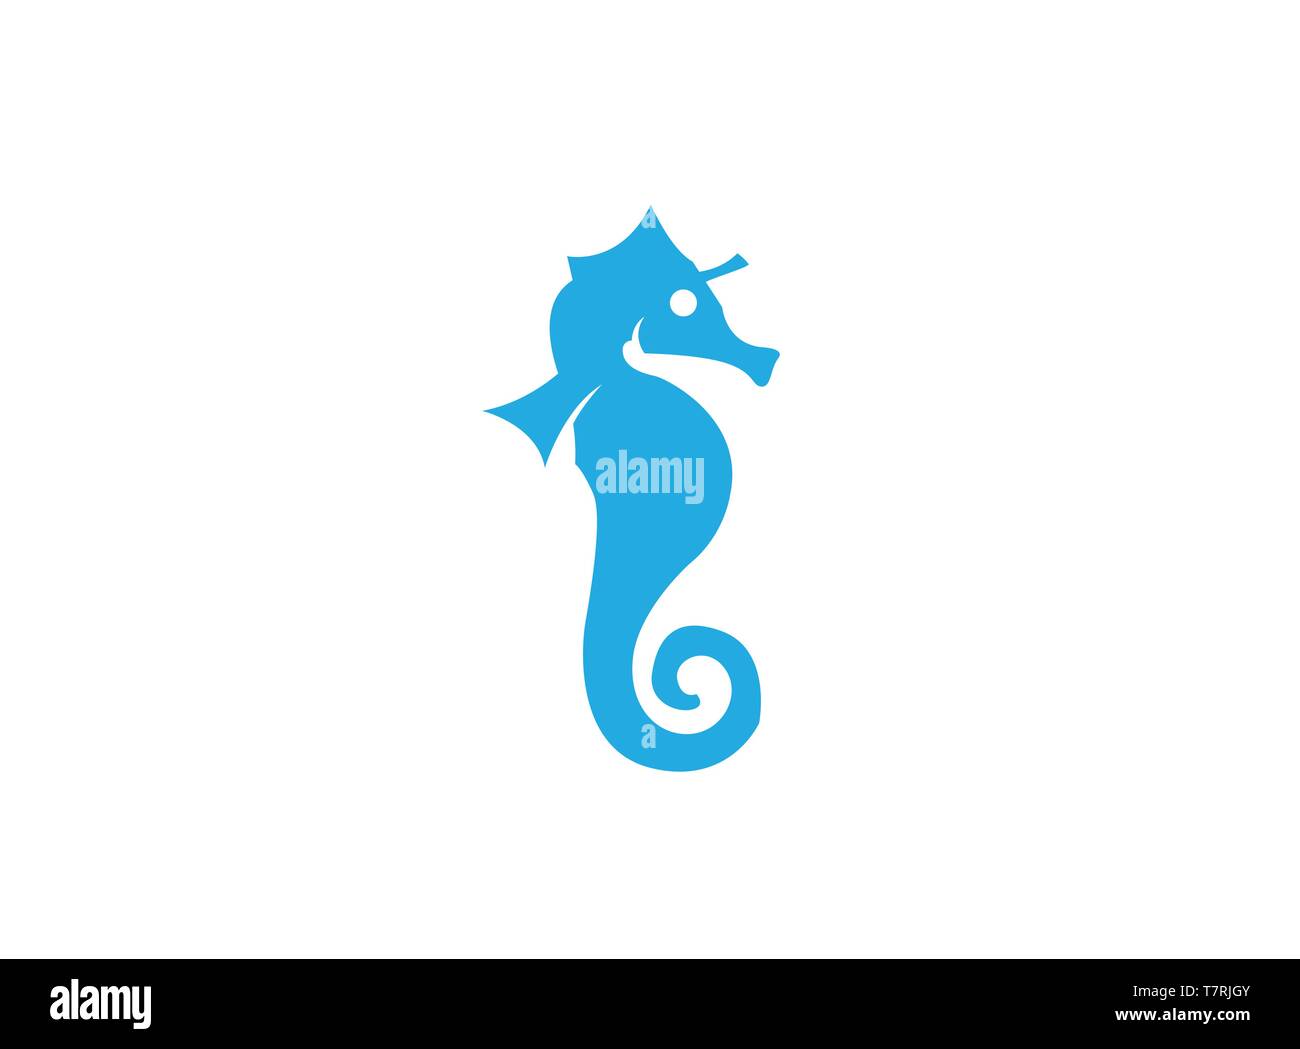 Cavalluccio marino un piccolo pesce marino con segmentata corazza ossea logo design illustrazione su sfondo bianco Illustrazione Vettoriale